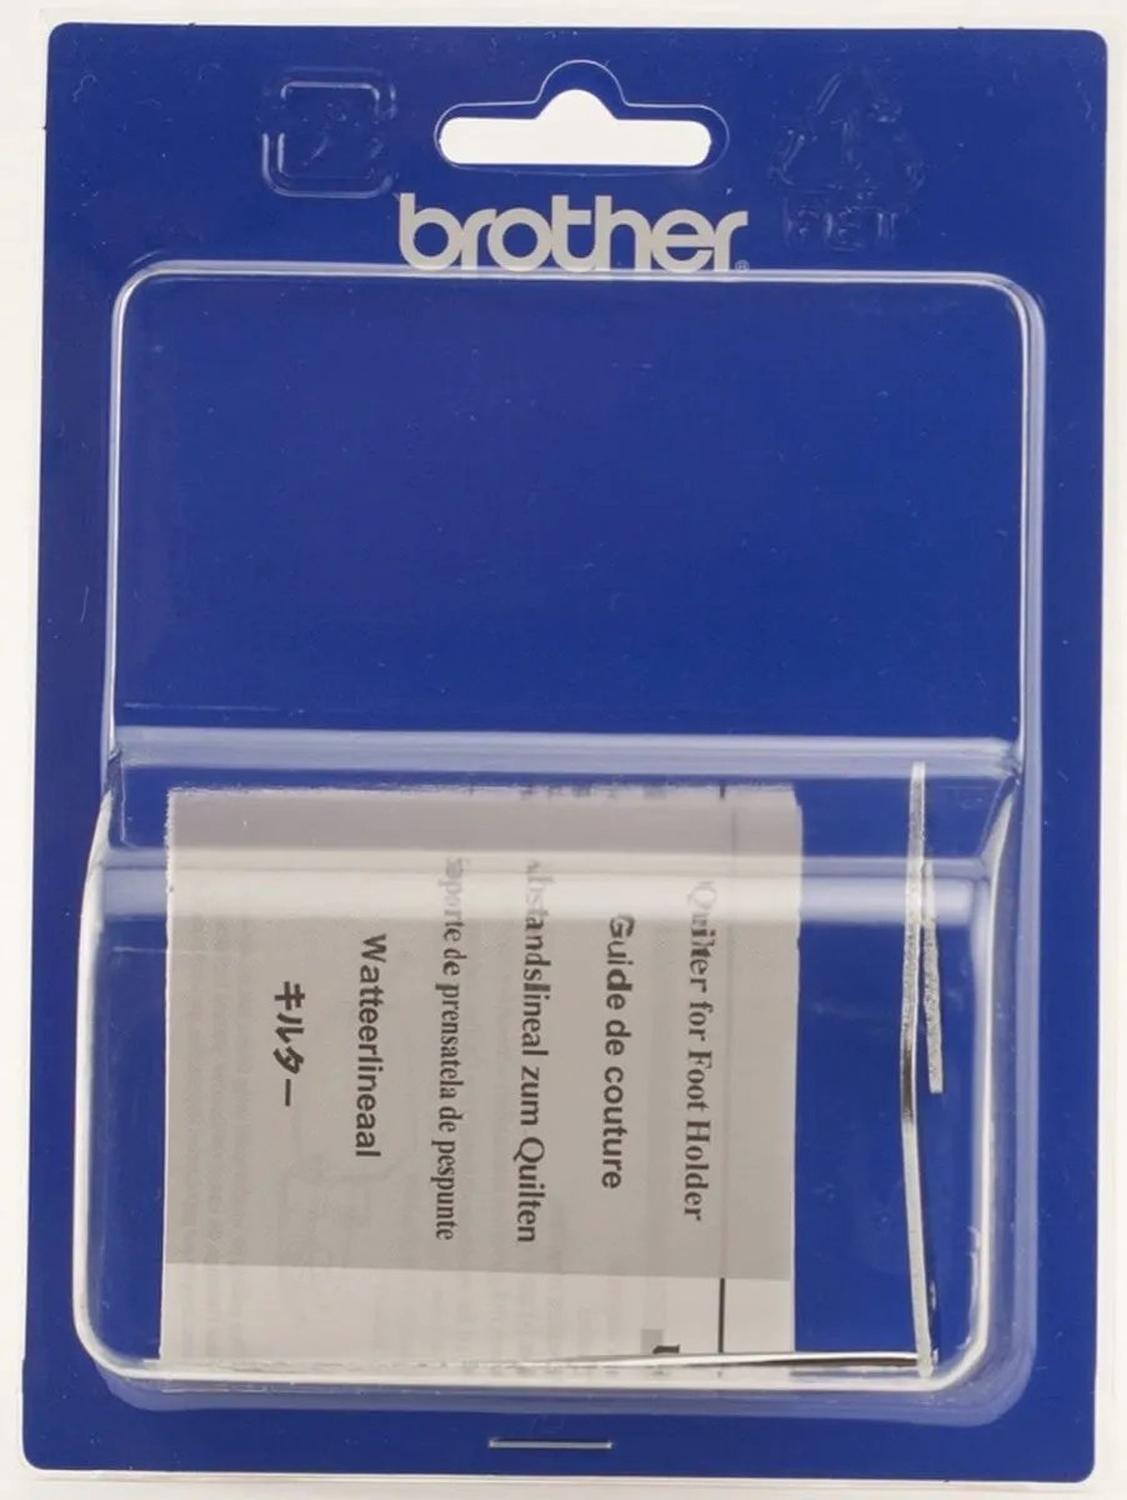 Guía de acolchado Brother para puntadas paralelas, SA132, accesorio para máquina de coser